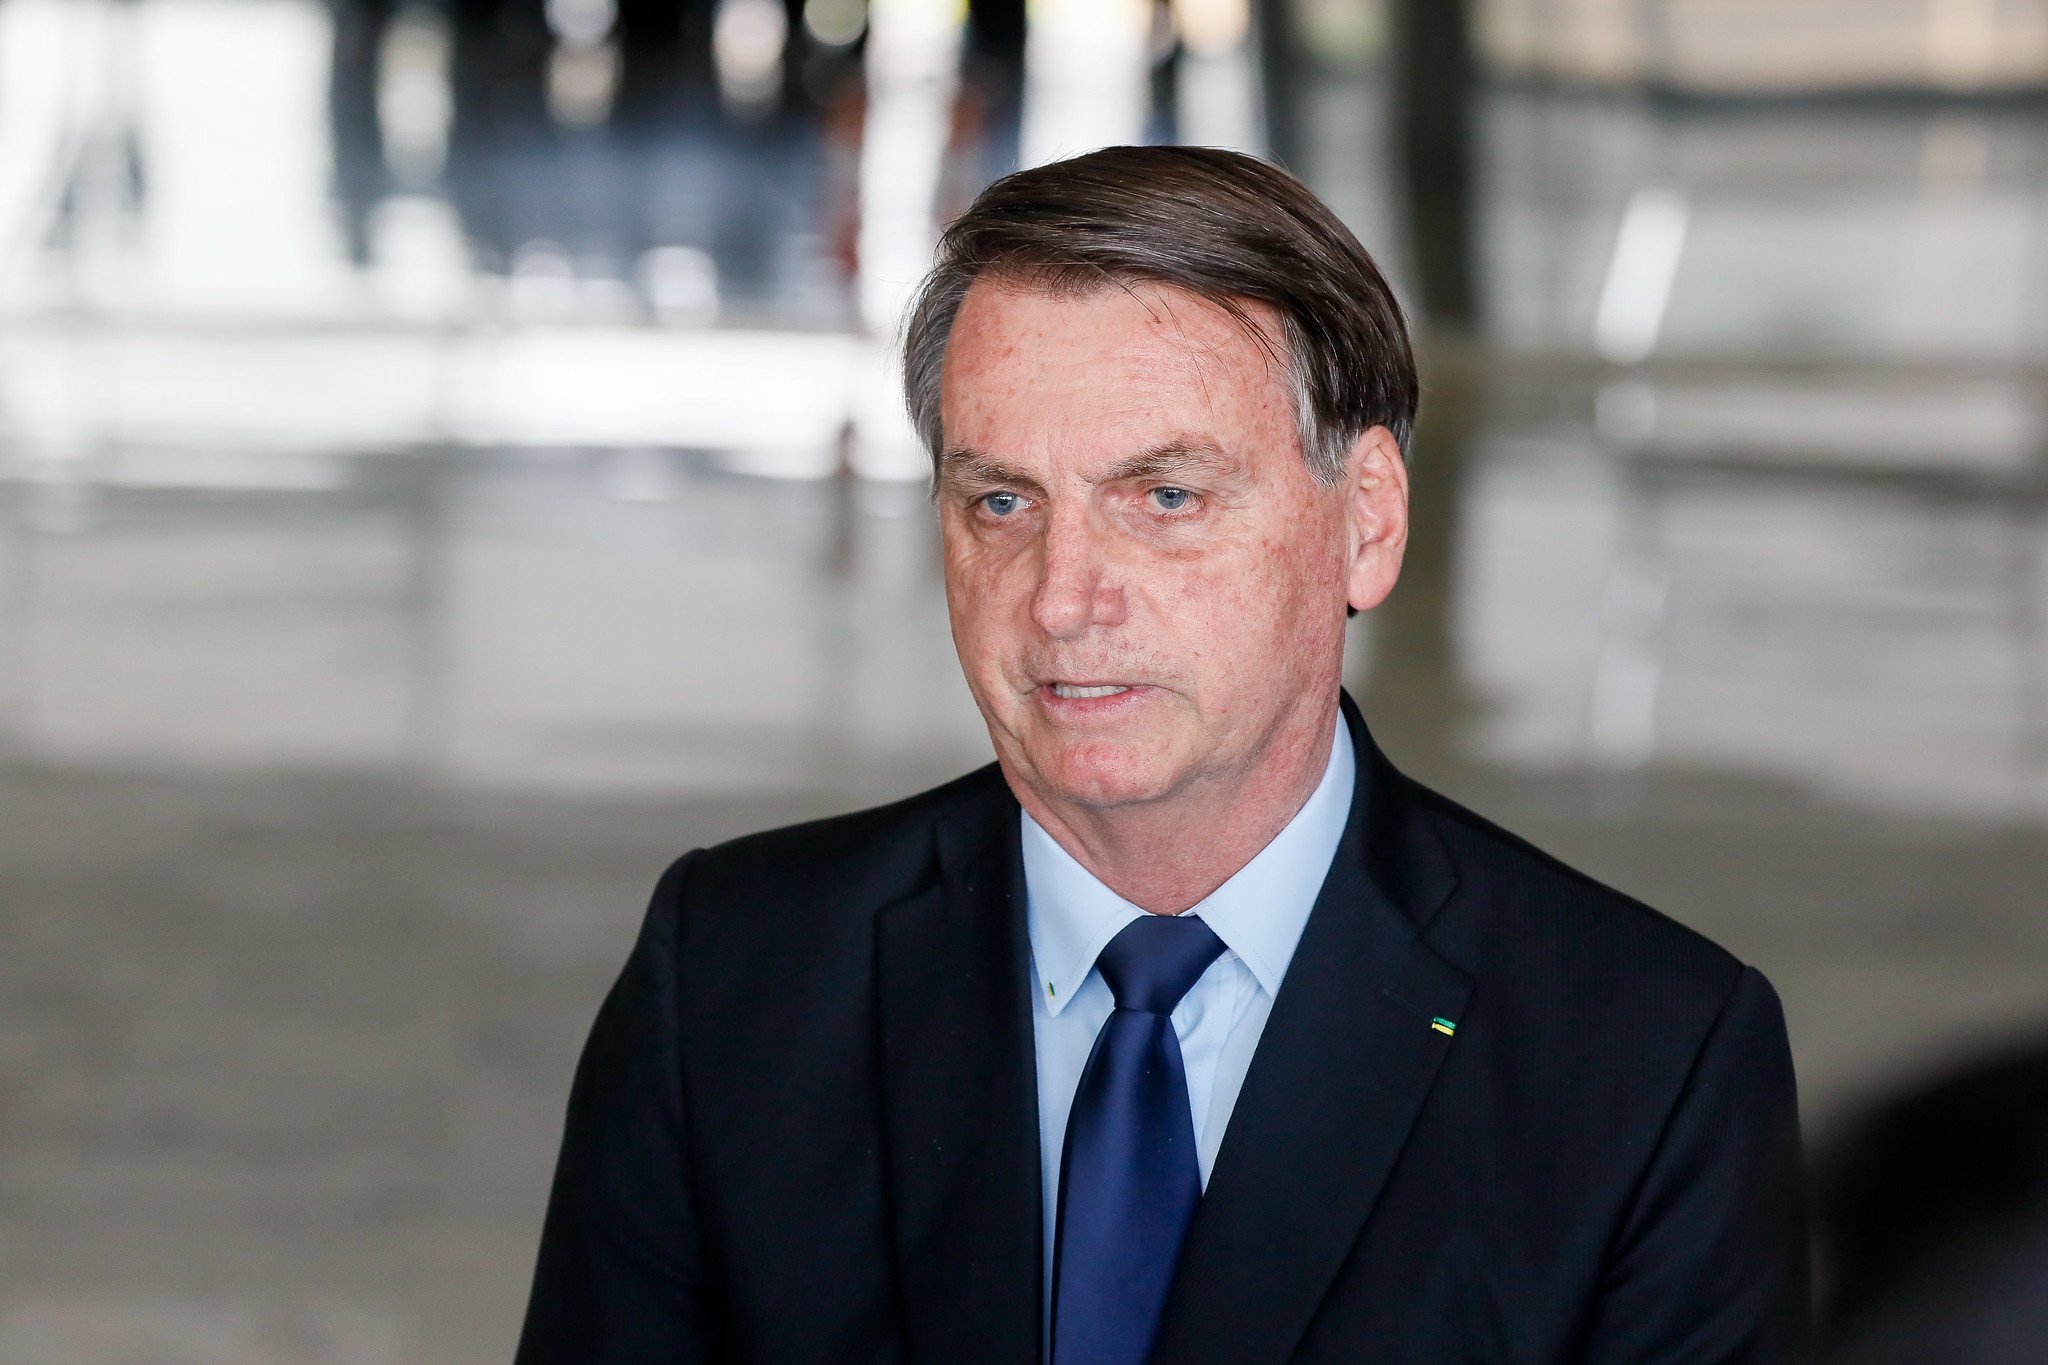 Protestos contra governo são o “grande problema do momento”, diz Bolsonaro